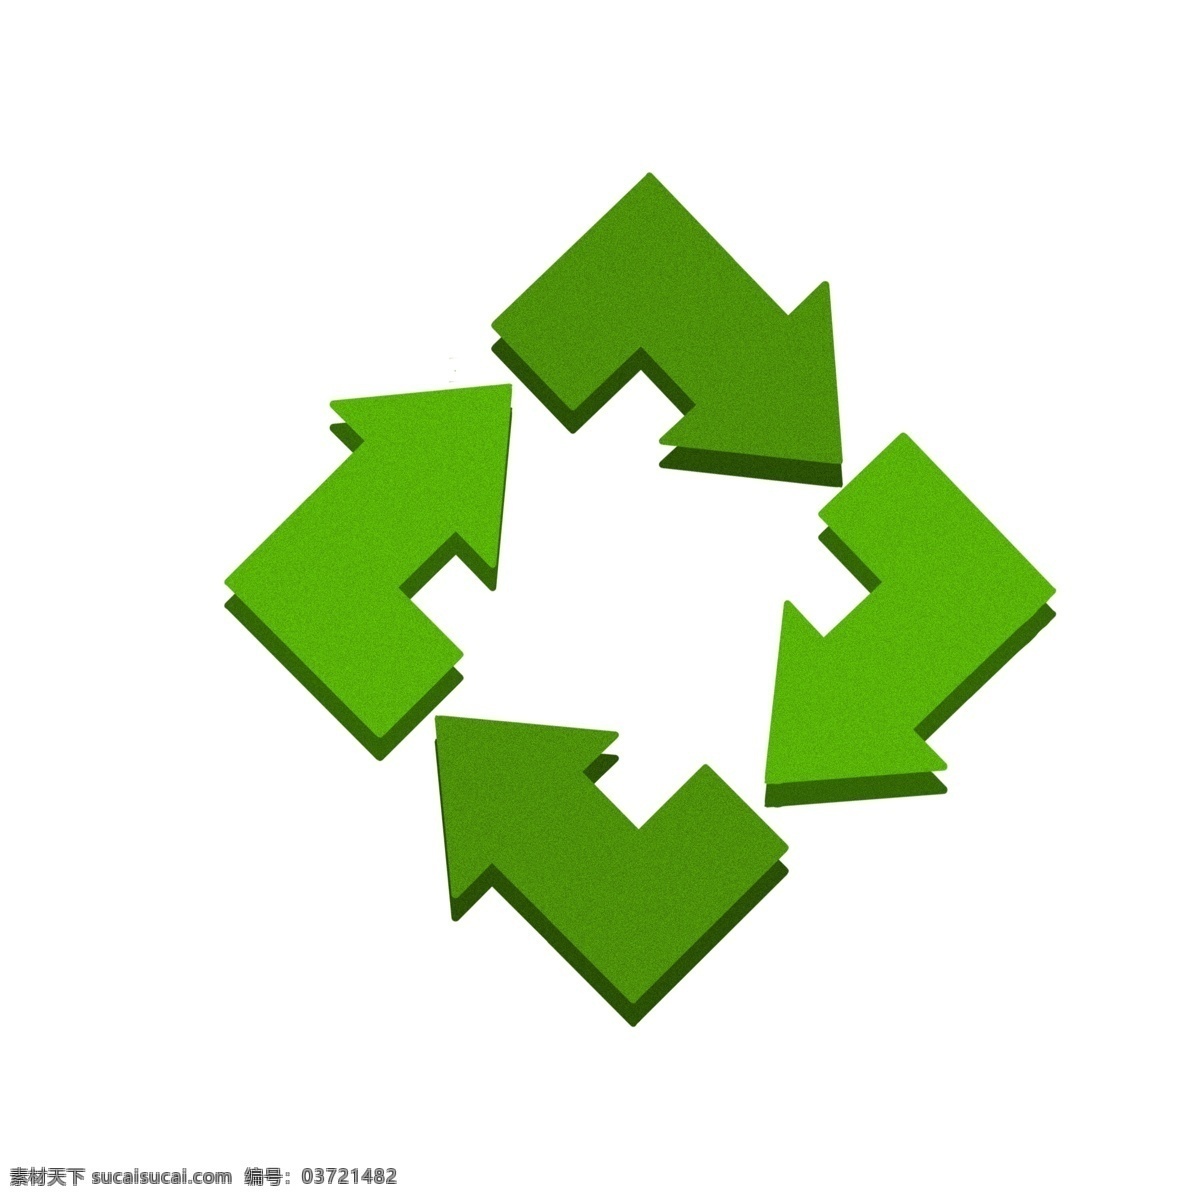 绿树 循环 回收 免 抠 图 图标 垃圾桶 绿叶 生态标志 环保 可回收 可再生能源 低能耗 绿色 绿色环保 回收利用